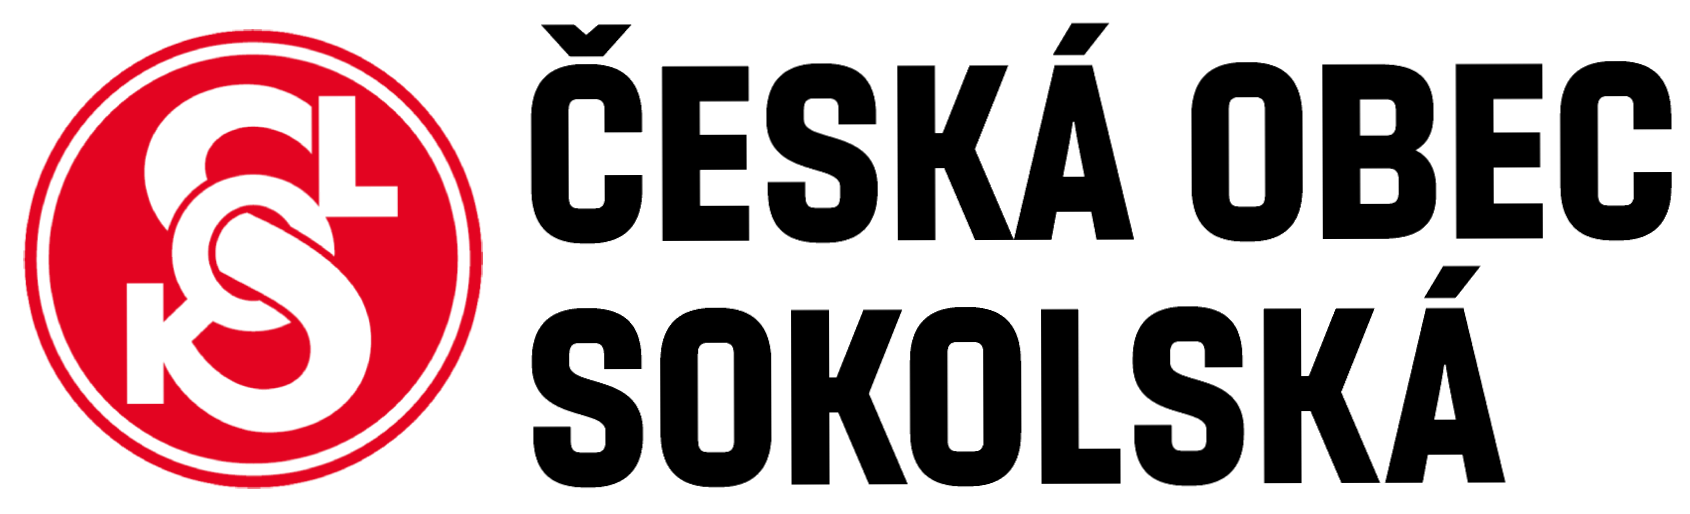 ČOS logo